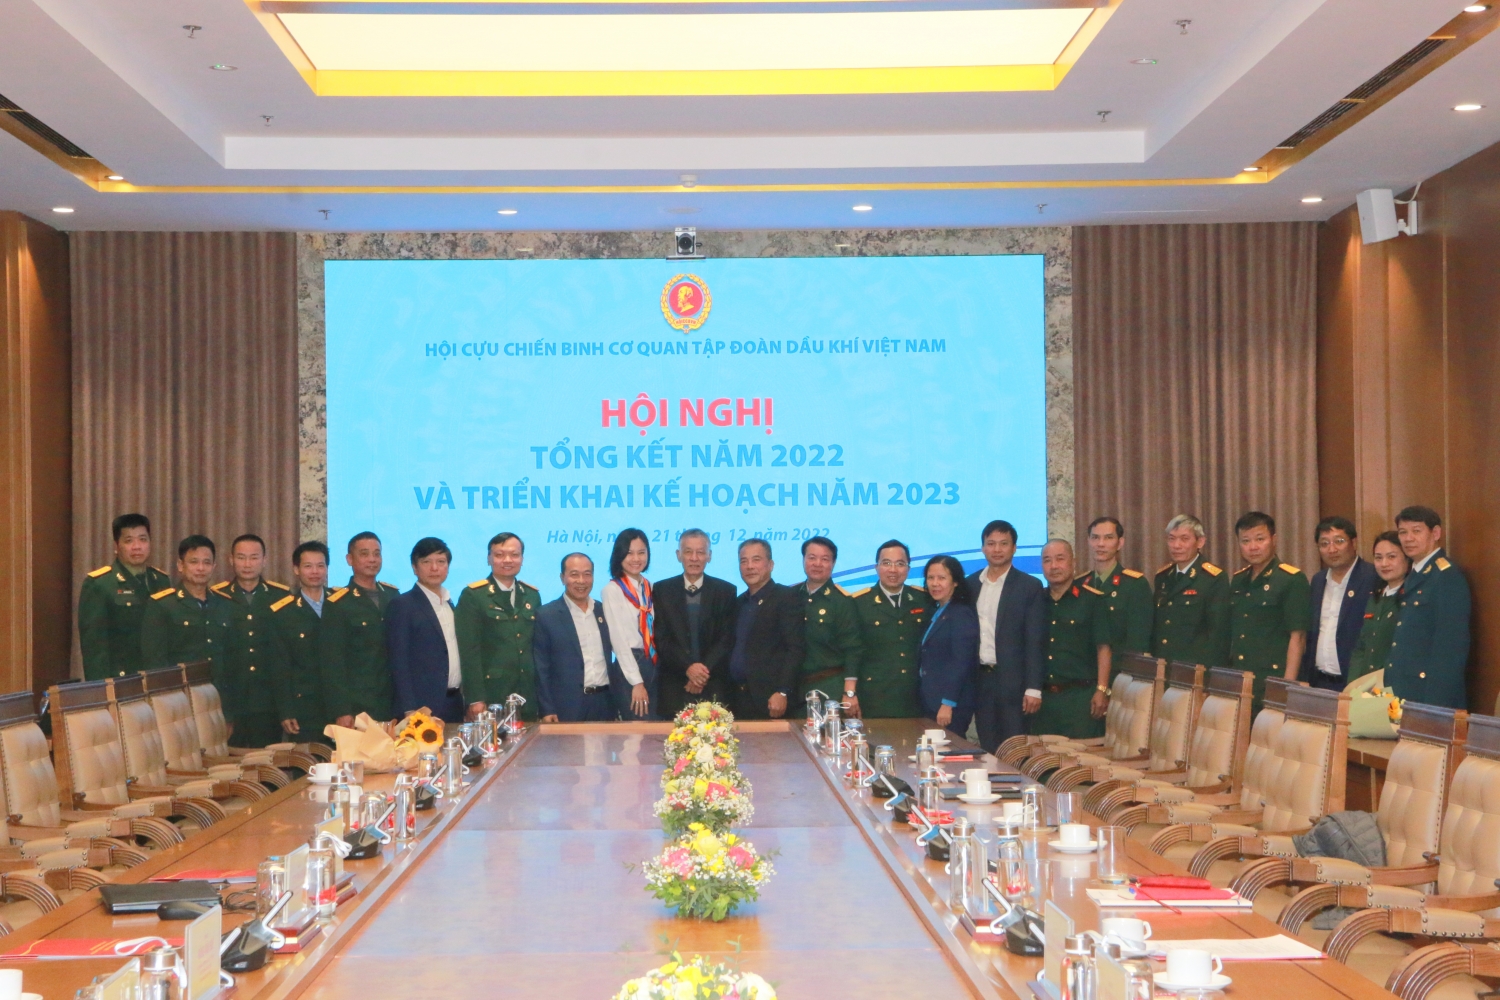 Kỷ niệm 78 năm ngày thành lập Quân đội Nhân dân Việt Nam